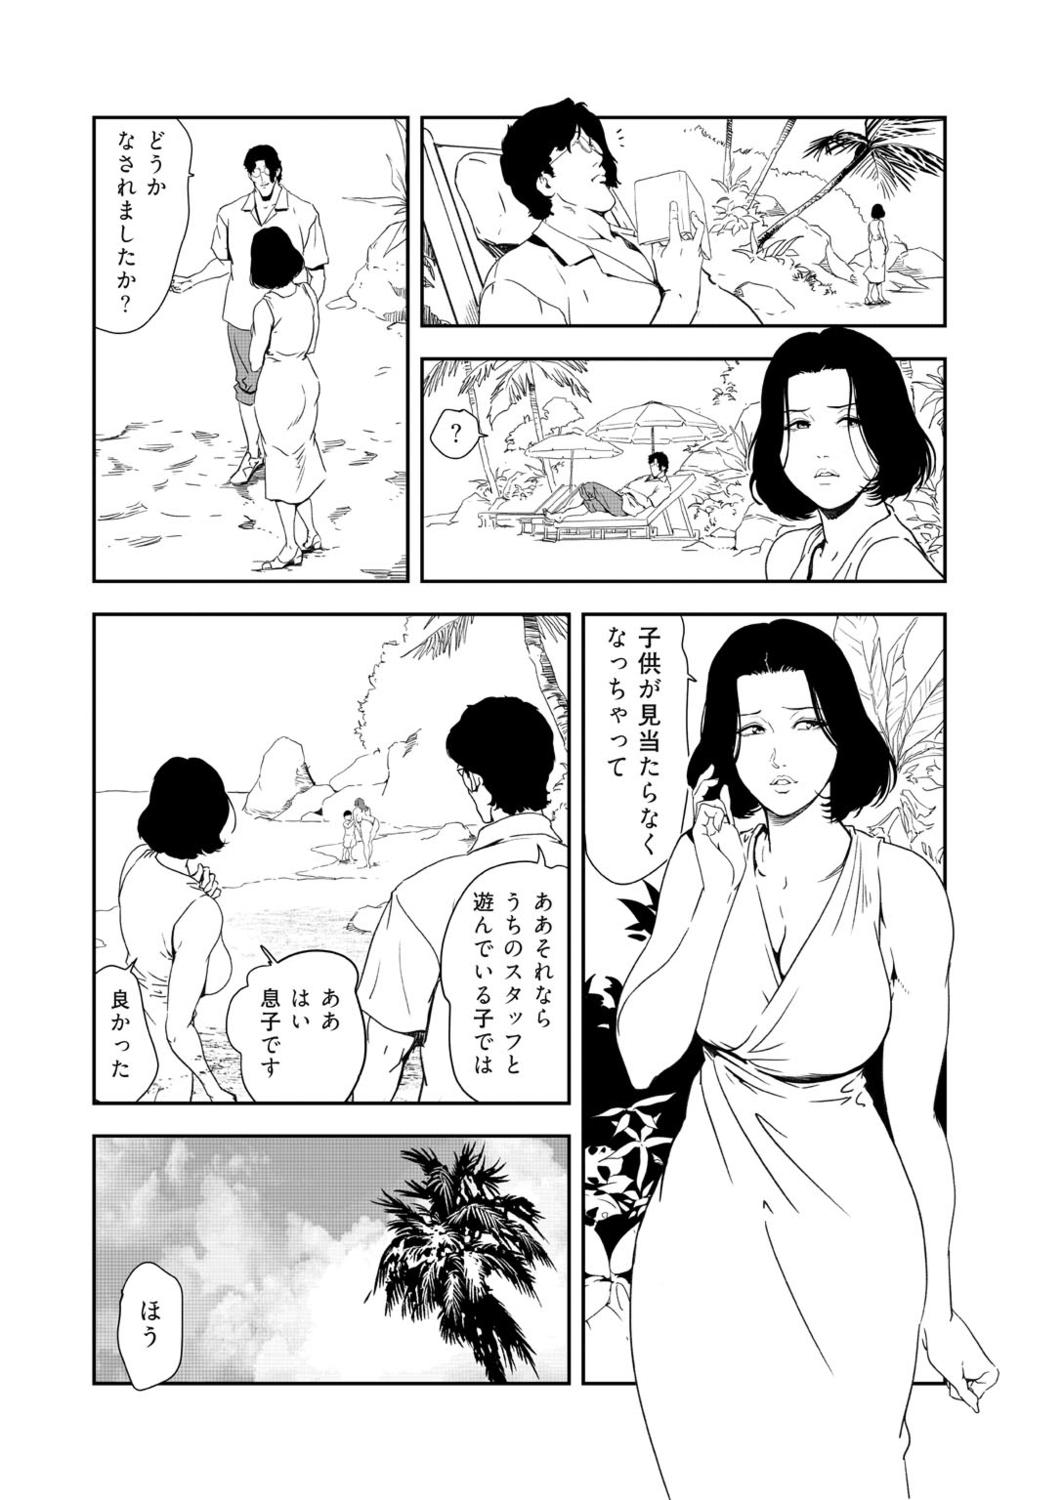 Beard Nikuhisyo Yukiko 41 Moneytalks - Page 8